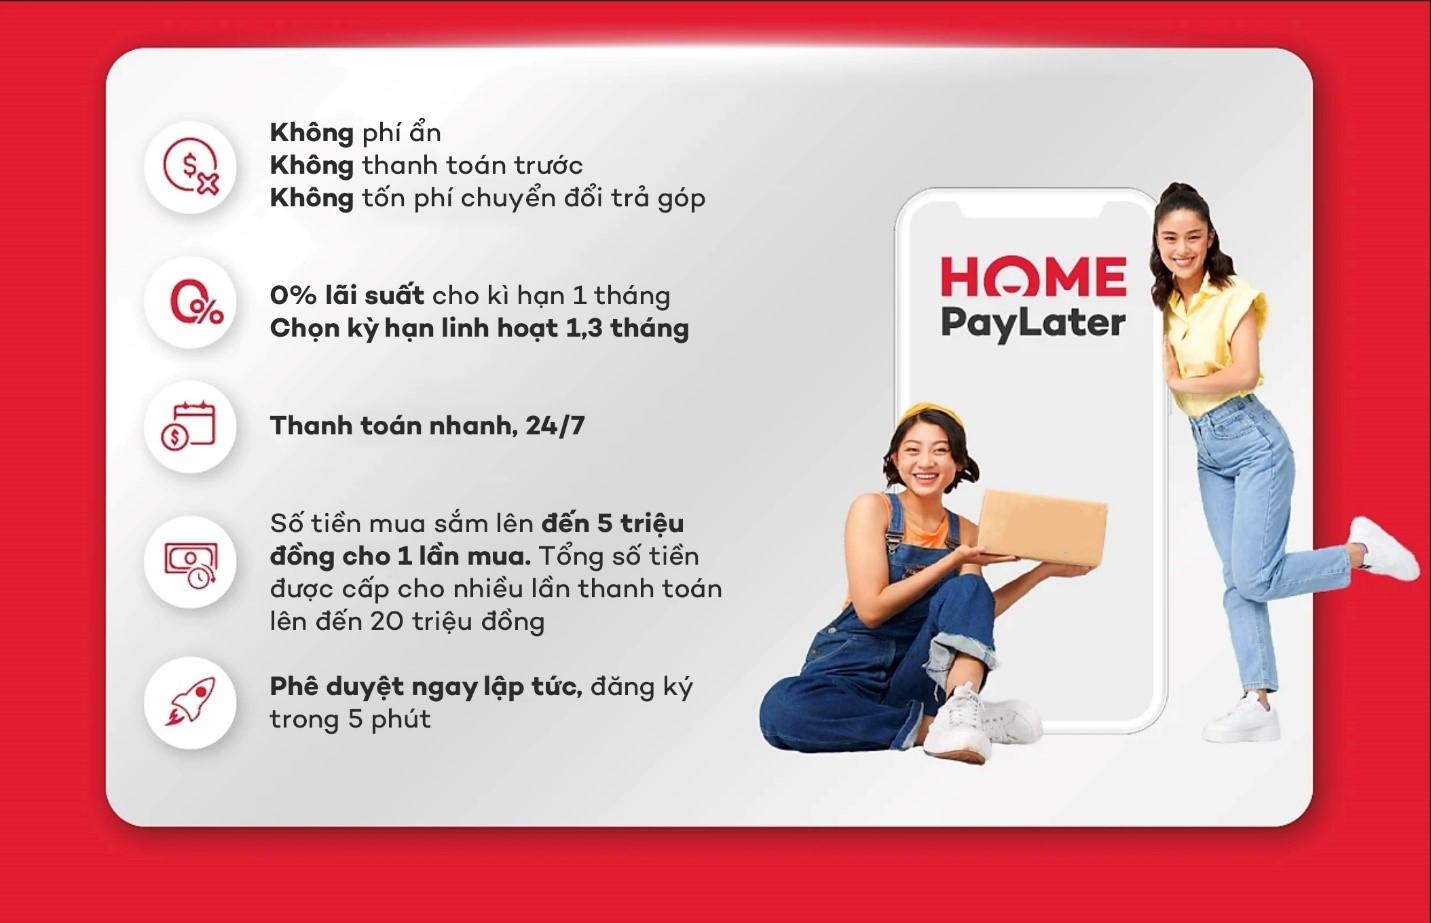 Home PayLater - Trải nghiệm mua sắm hiện đại và cơ hội nhận ngay khuyến mãi hot - 2